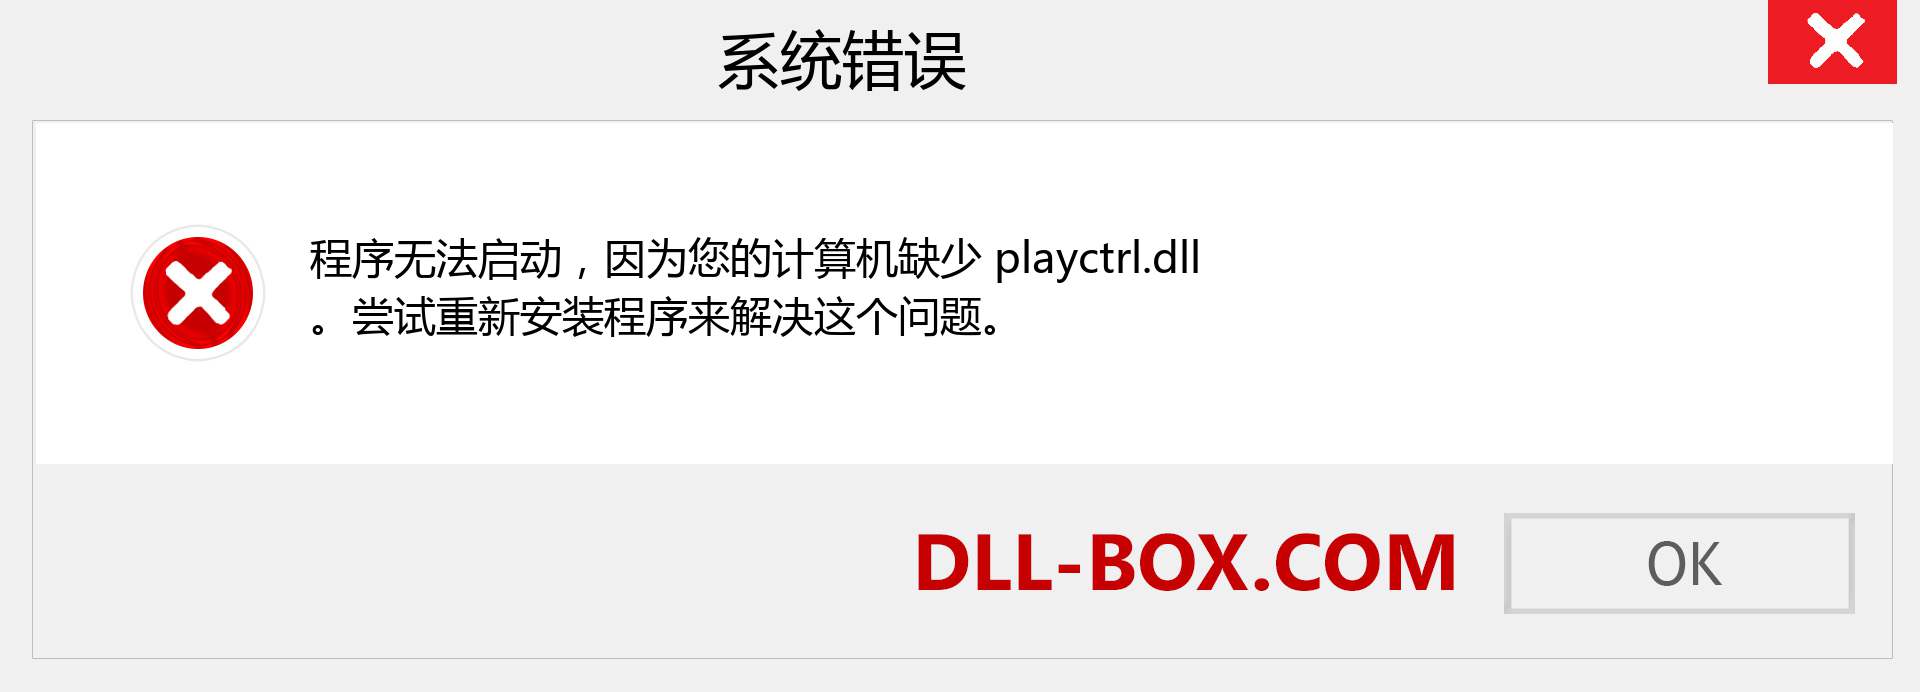 playctrl.dll 文件丢失？。 适用于 Windows 7、8、10 的下载 - 修复 Windows、照片、图像上的 playctrl dll 丢失错误